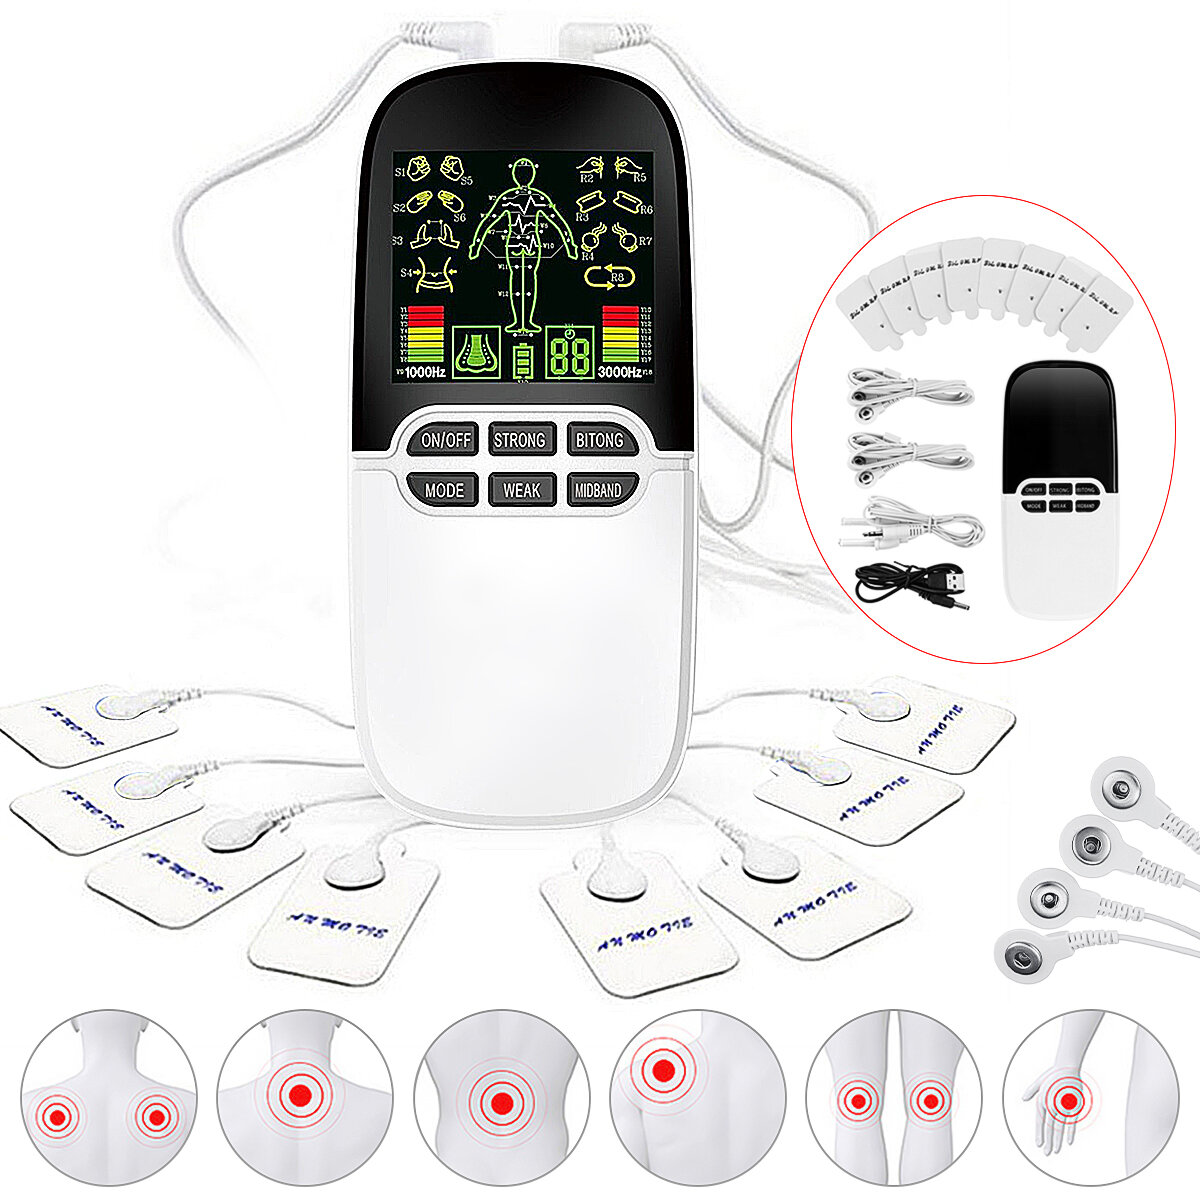 TENS Unit Elektronische Puls Meridiaan Massager LCD Digitale Display 8 Behandelmodi Aanpassing Nek S